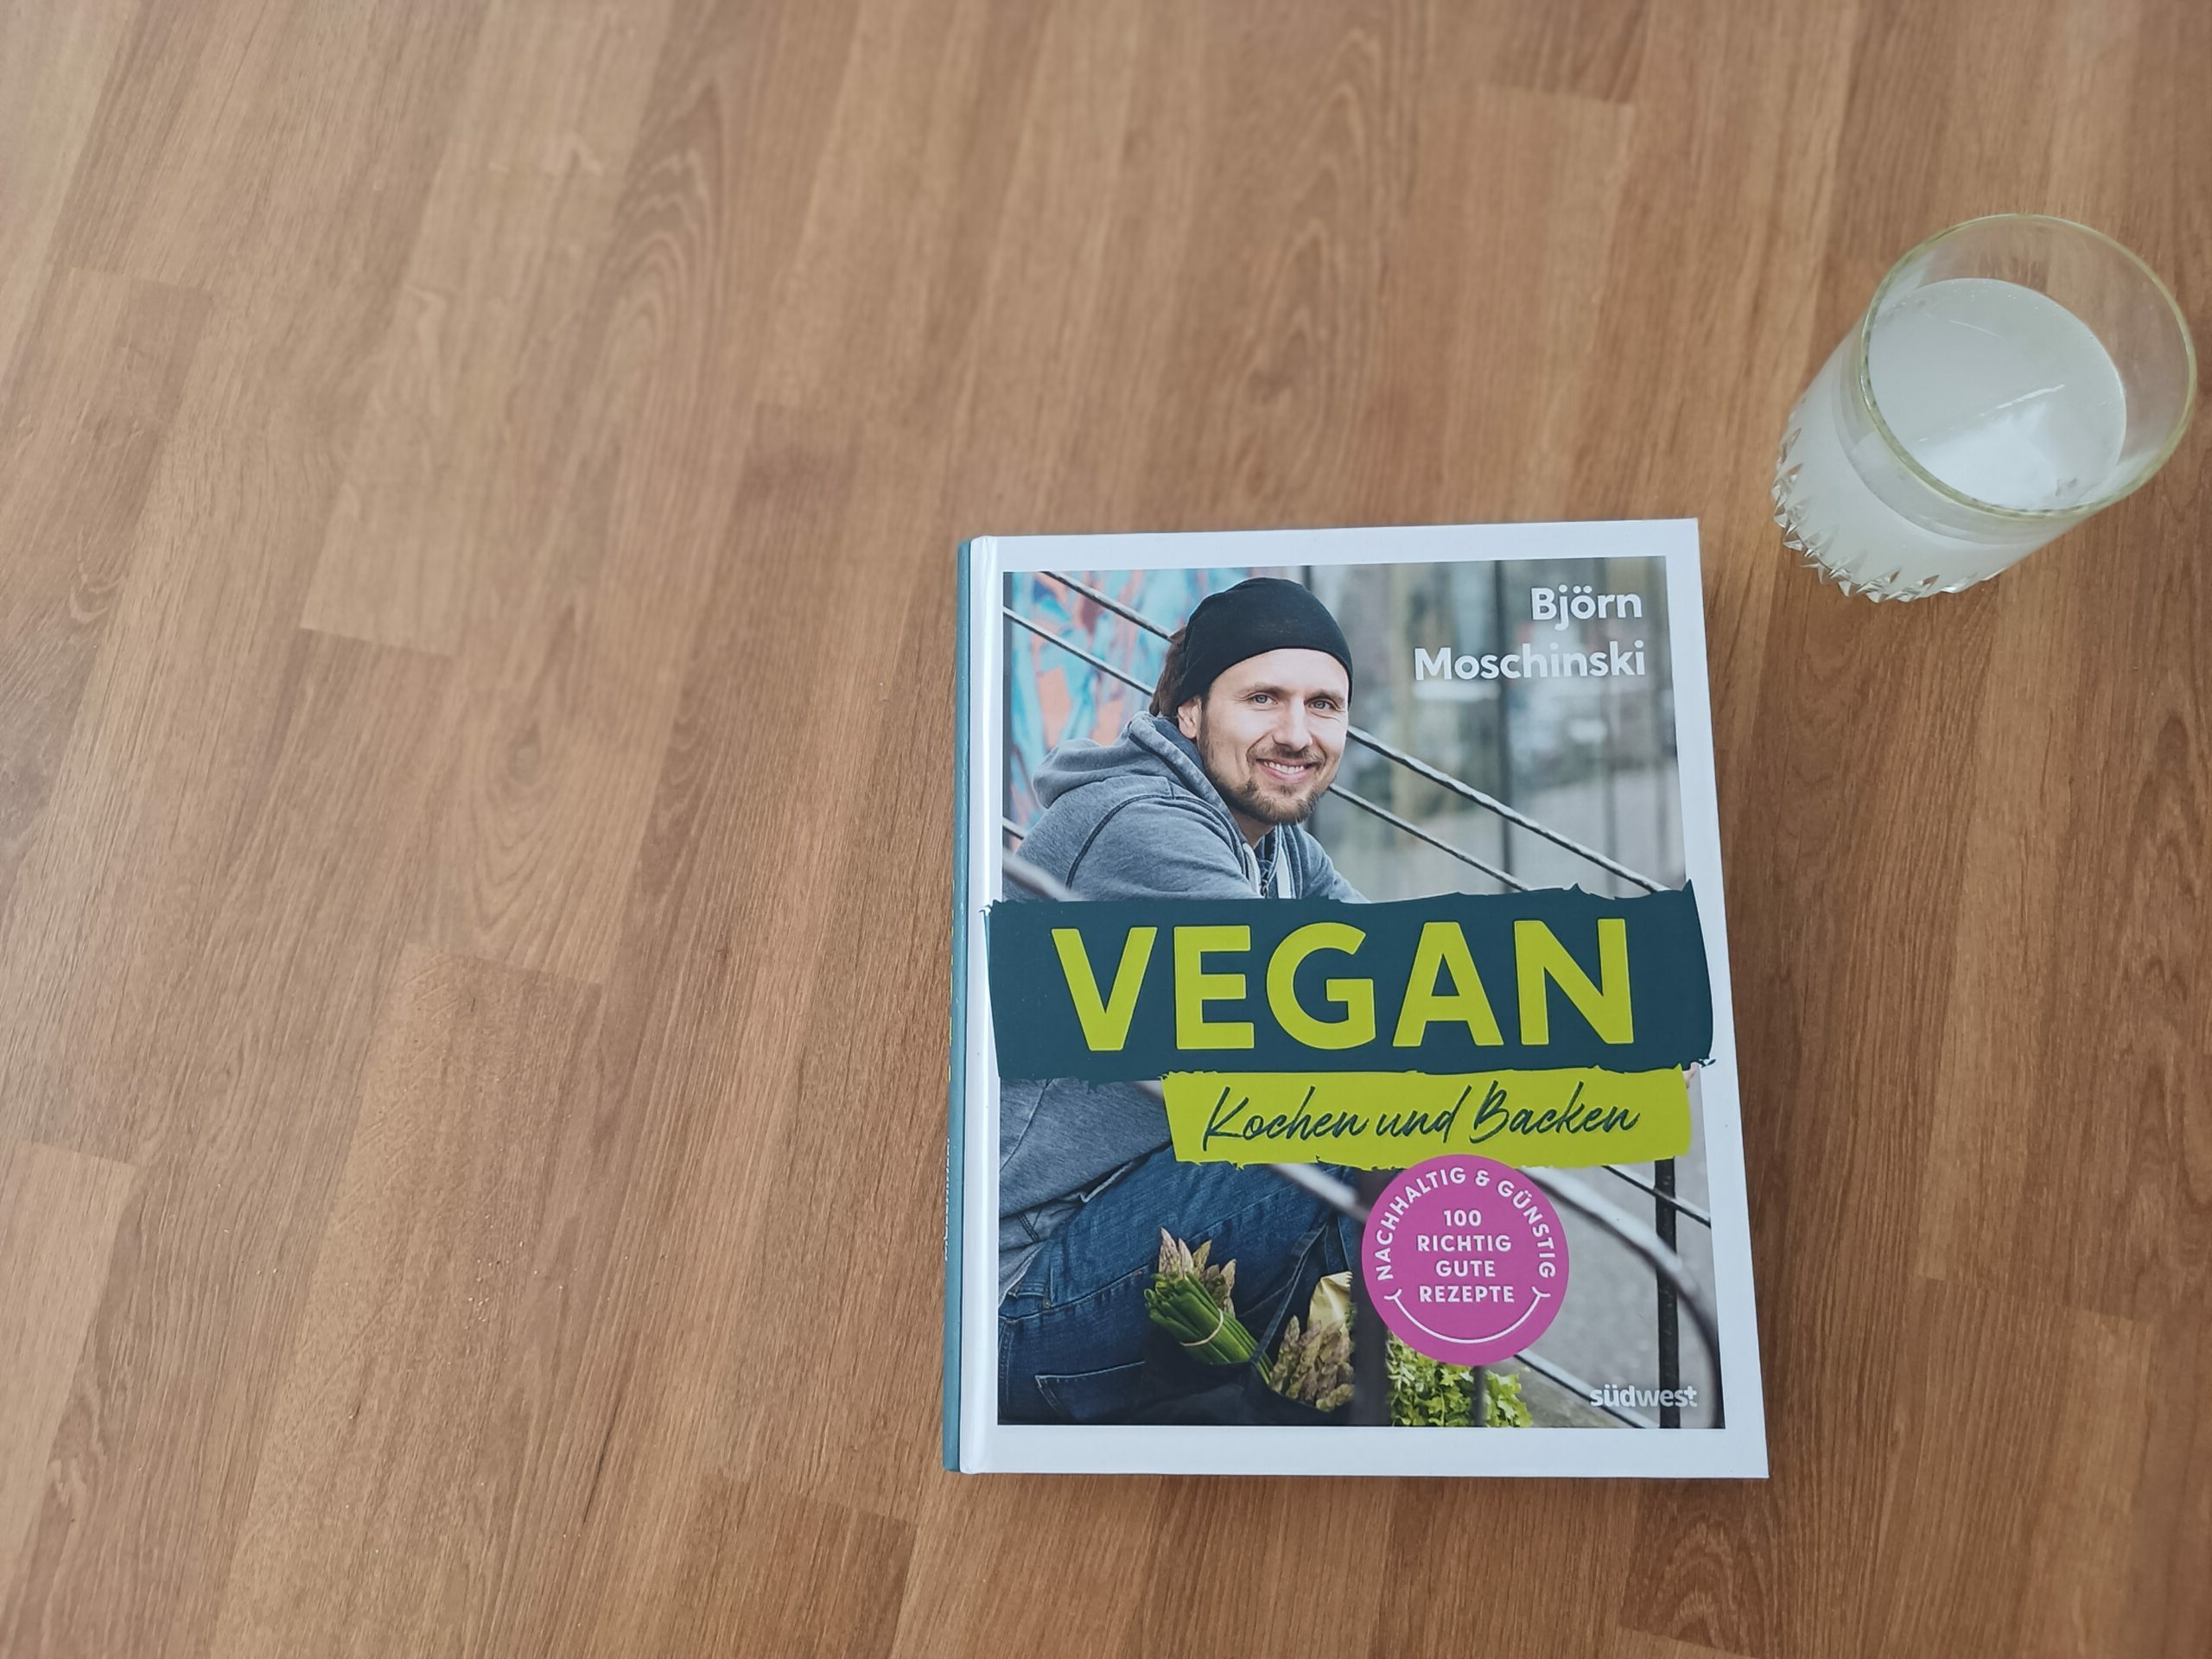 Buchvorstellung und Gewinnspiel: “Vegan Kochen und Backen” von Björn Moschinski